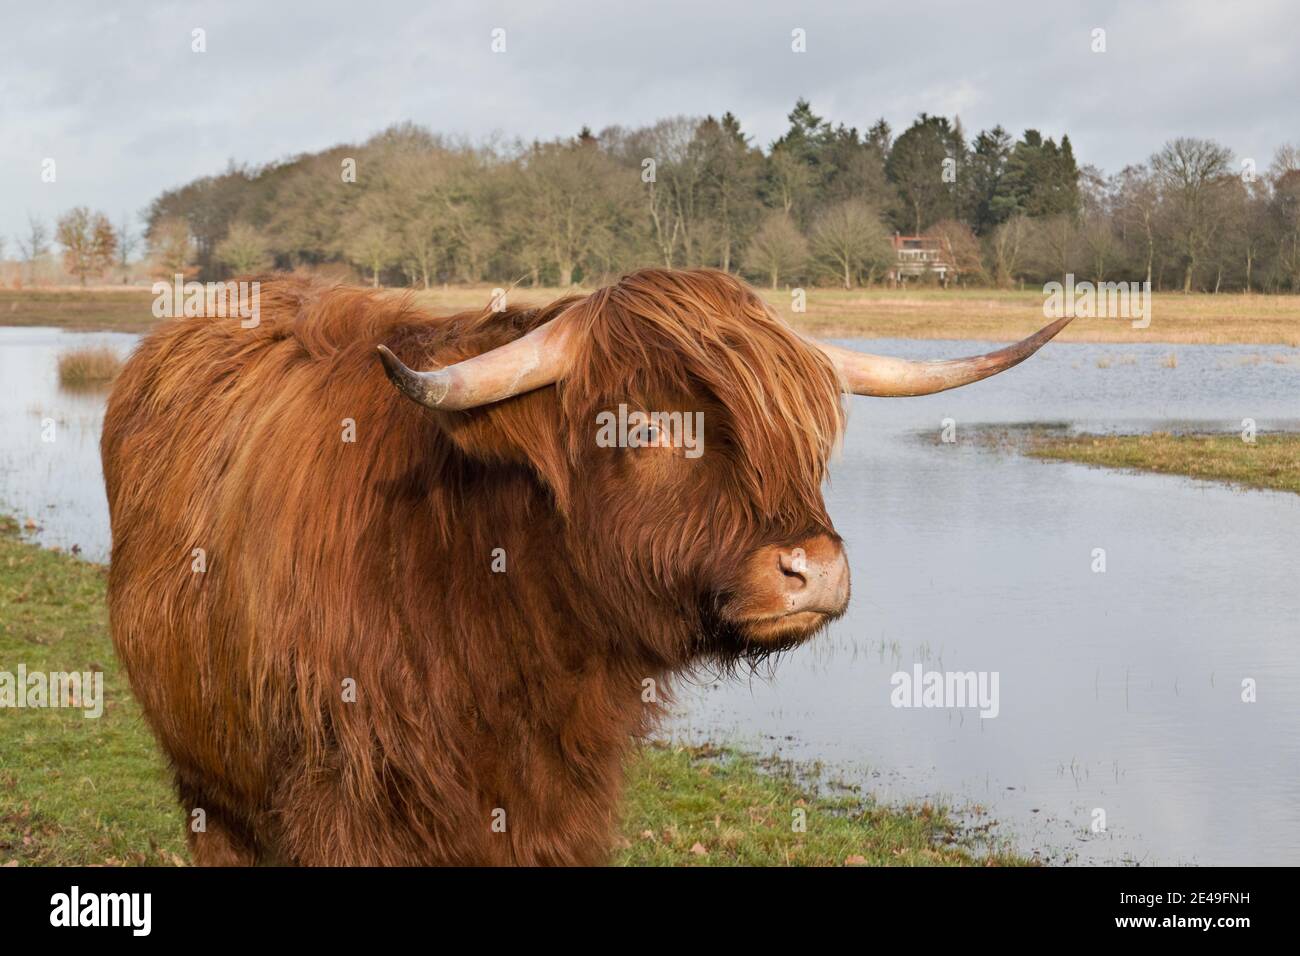 Vache écossaise de montagne avec de longs cheveux rouges, de longues cornes et un visage mignon Banque D'Images